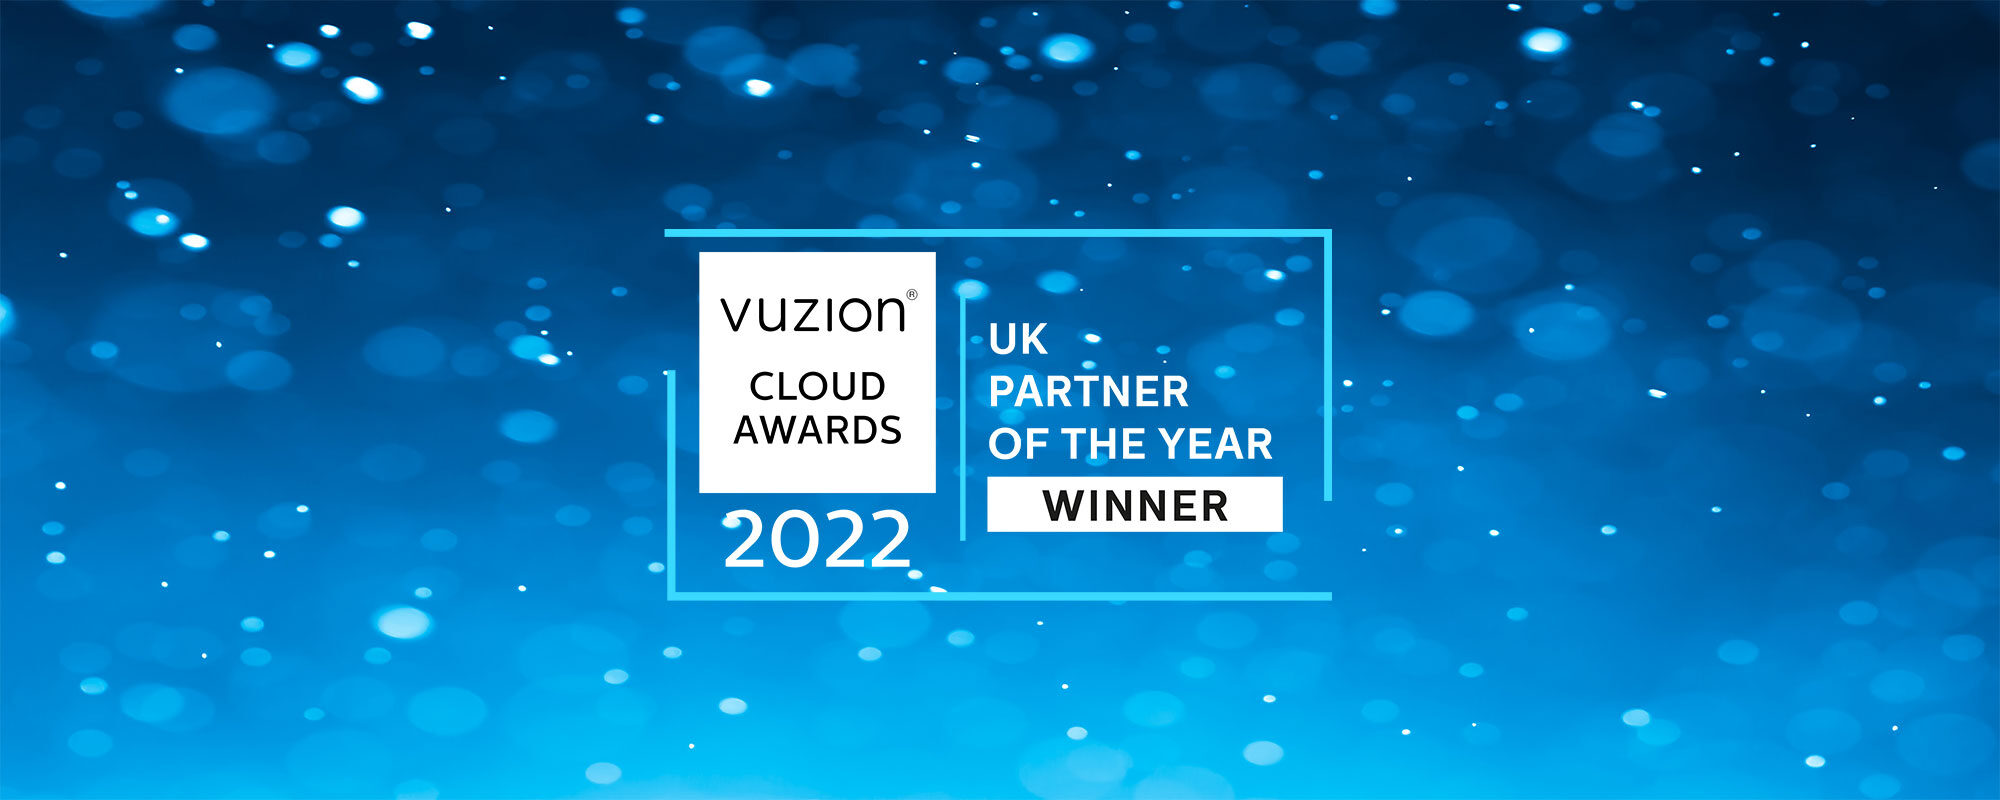 Vuzion_cloud_awards2022